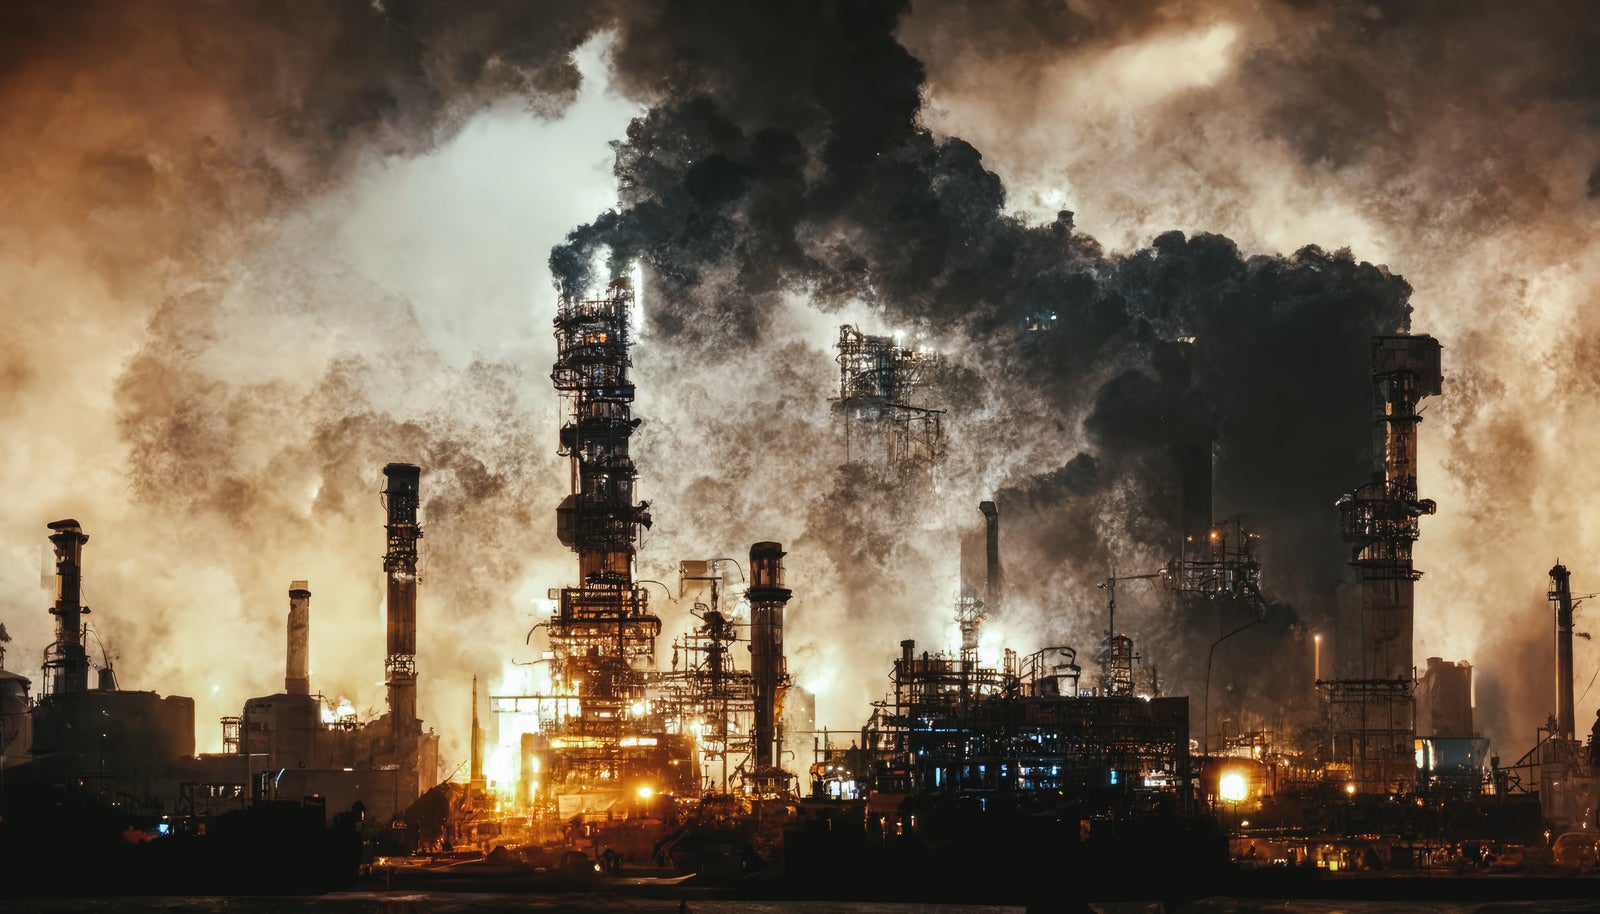 「工場から排出される煙」の写真